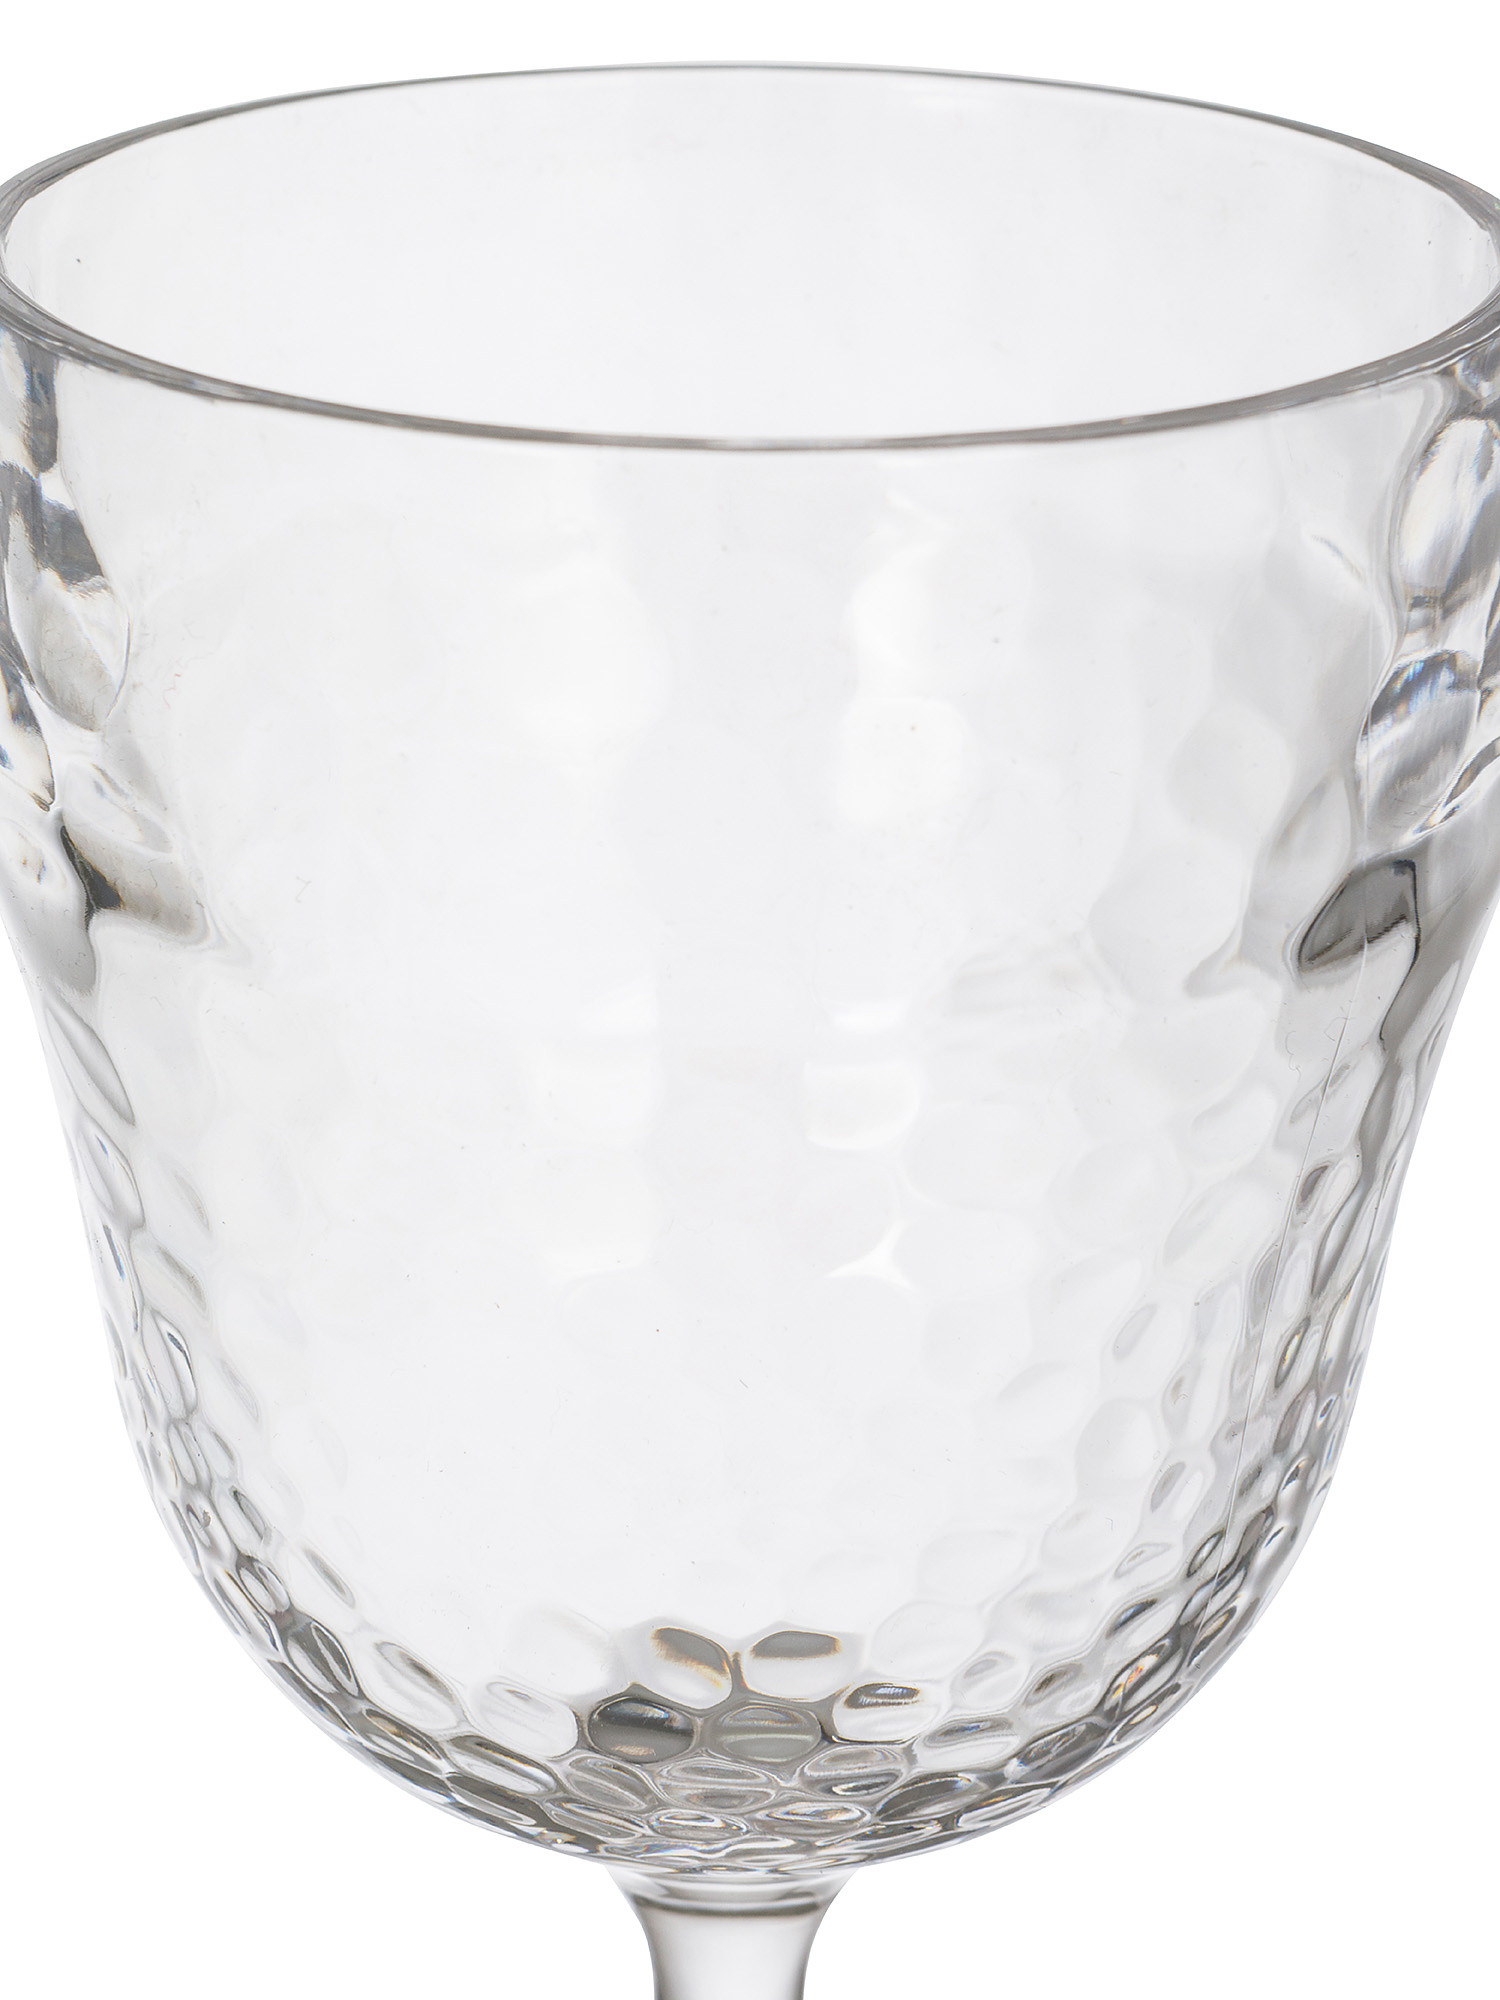 Plastic goblet with hammered effect, Transparent, large image number 1